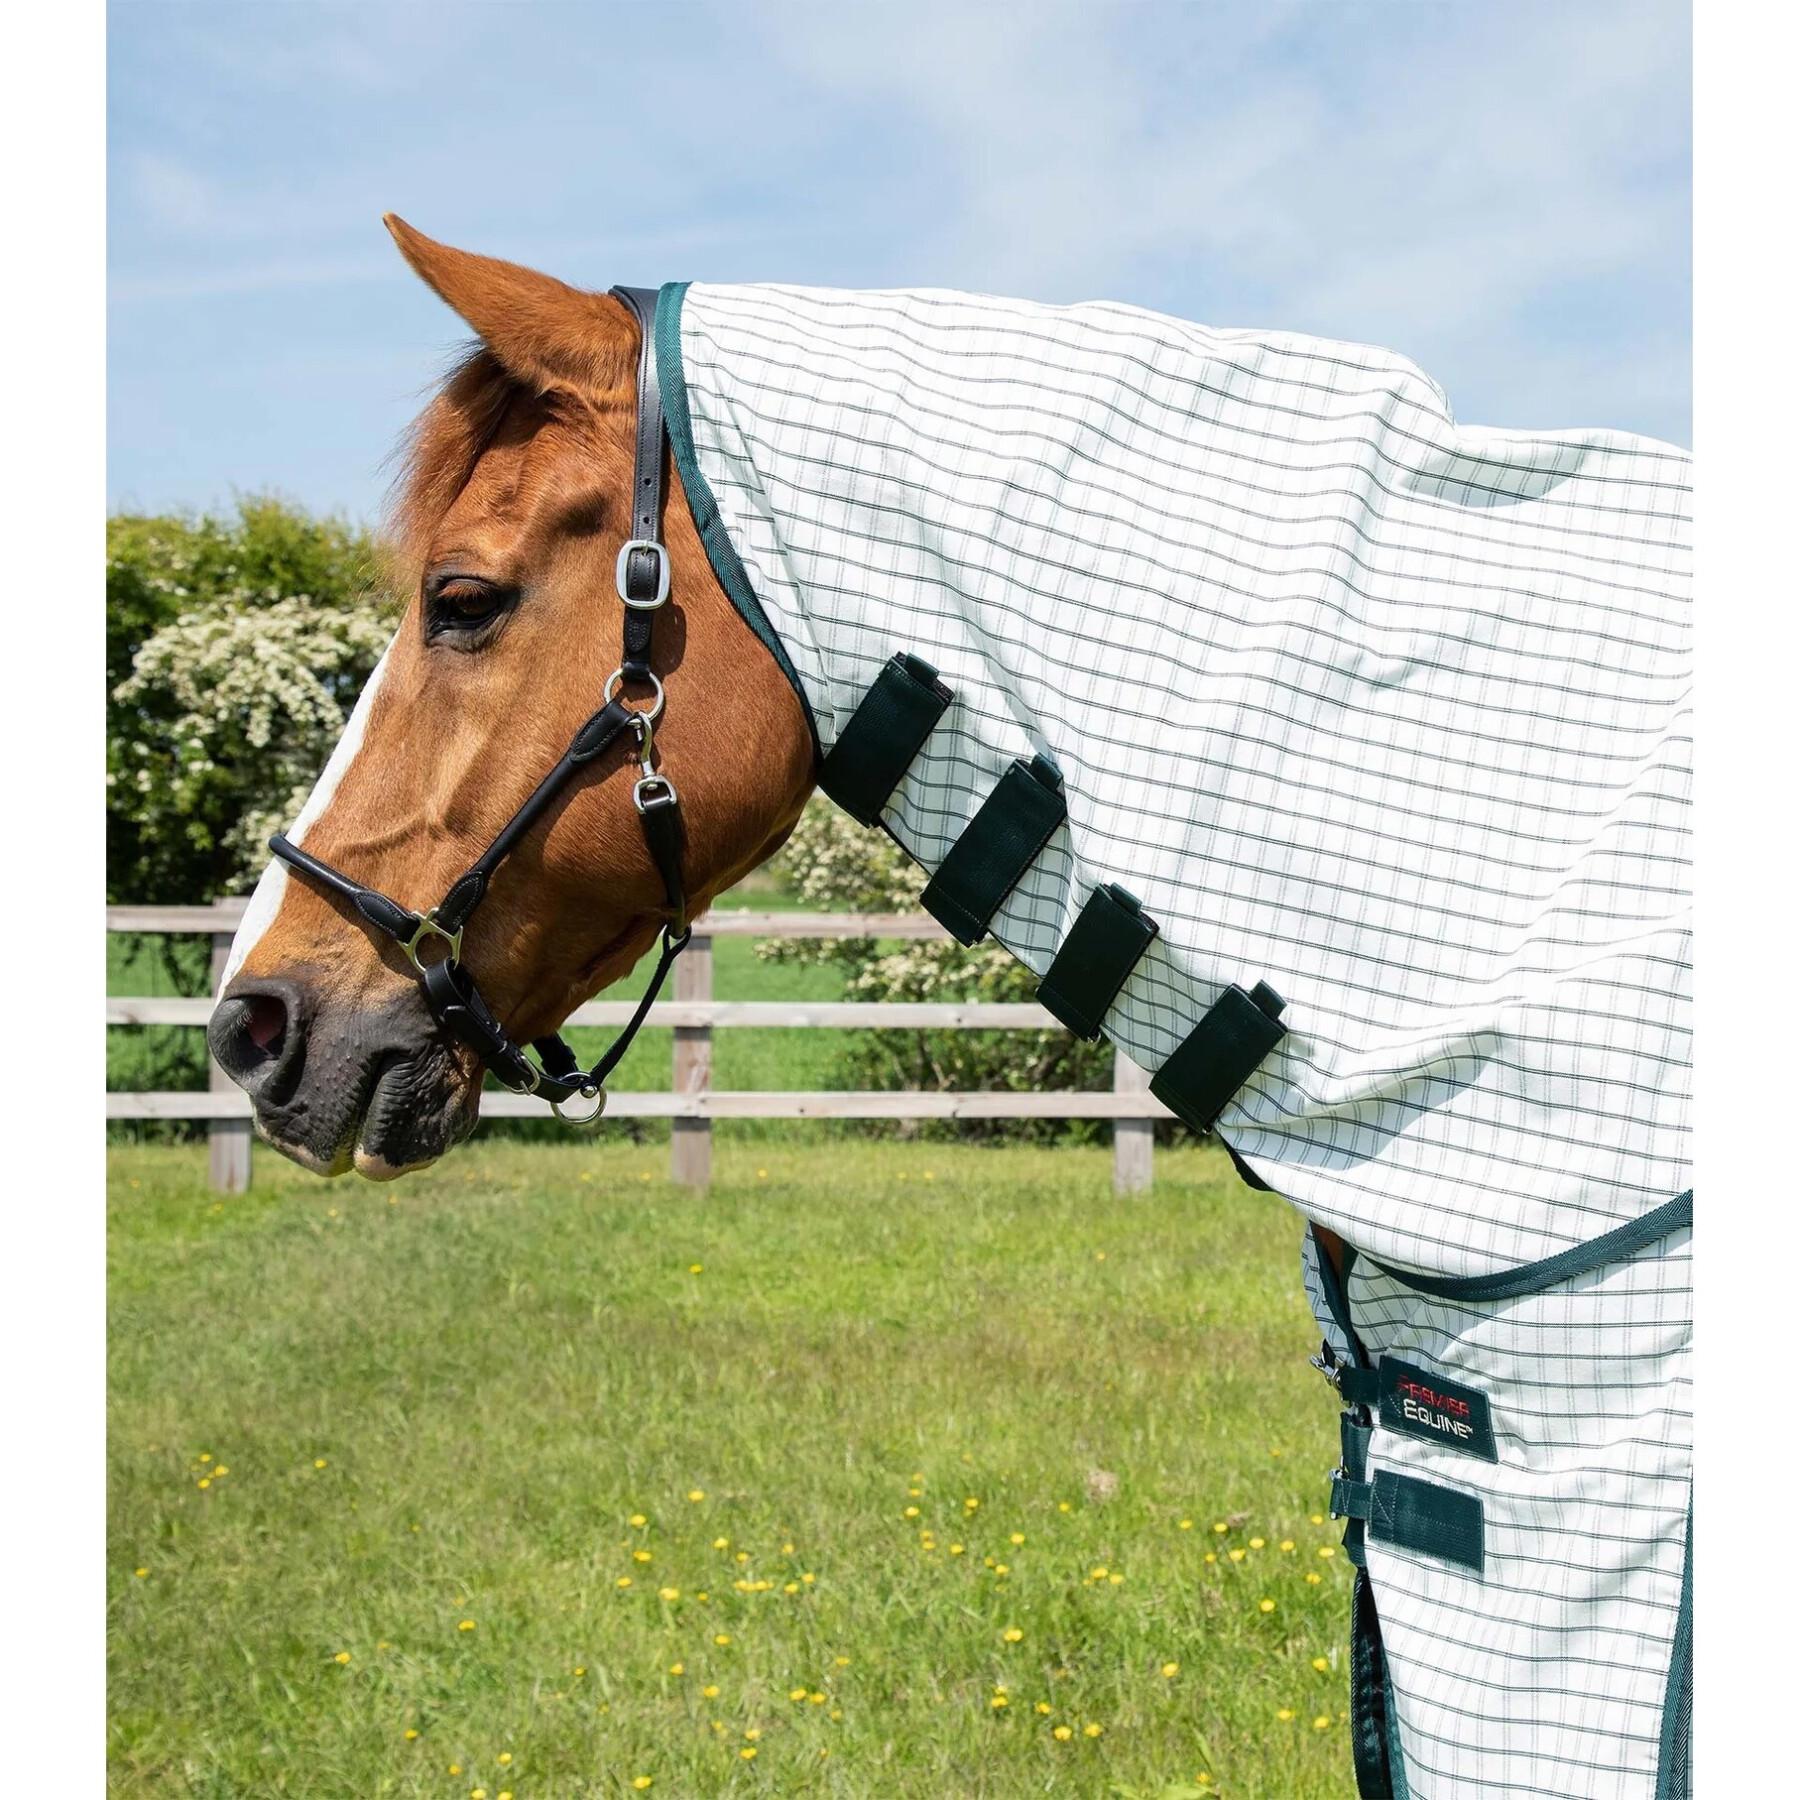 Protetor de pescoço para cavalos de cavalo de algodão com capa de pescoço Premier Equine